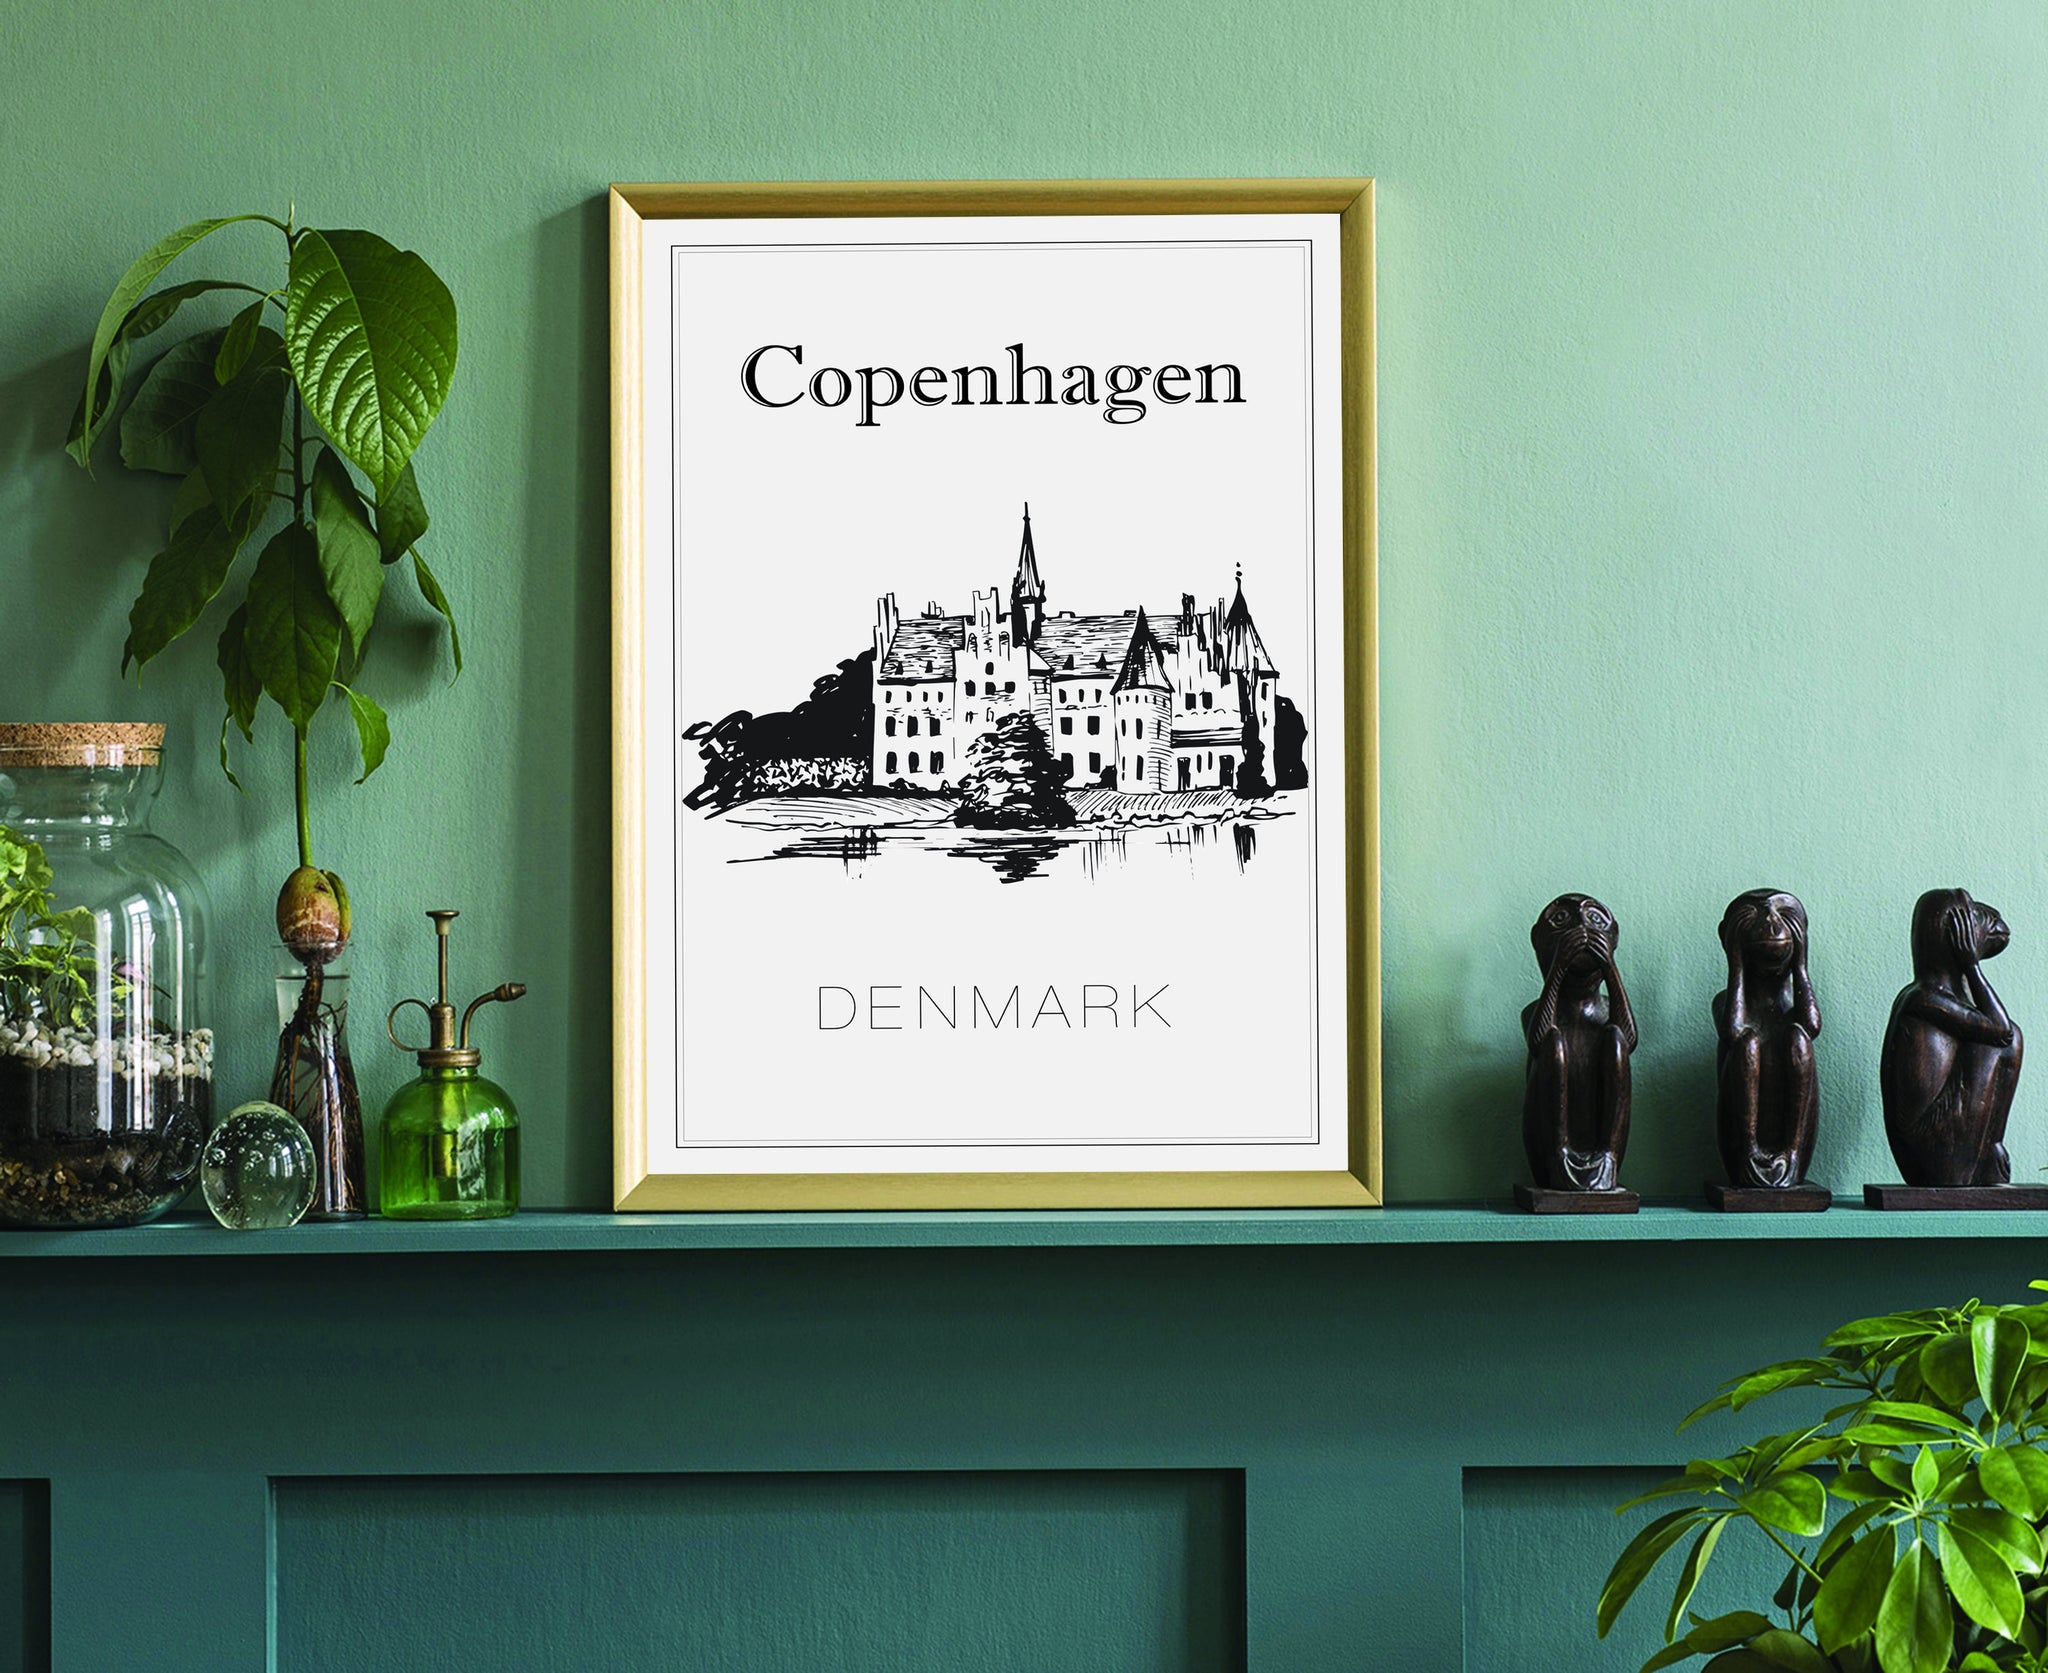 Hand Drawn Poster, Copenhagen Travel Poster, Denmark Poster Wall Art, Copenhagen Cityscape and Landmark Map, City Map Poster For Home